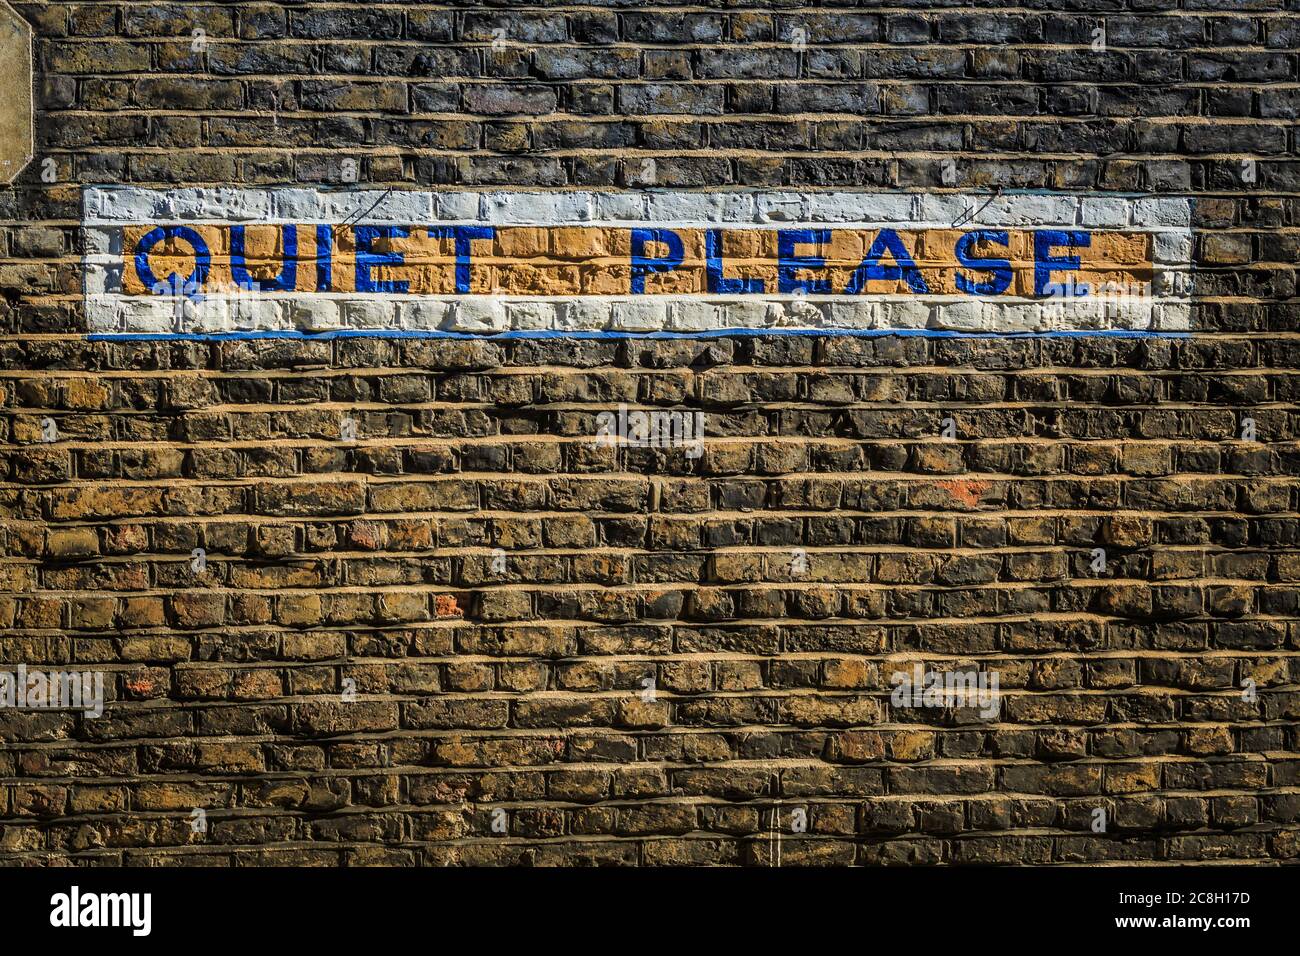 Mur de briques grundy avec les mots « Quiet Please » peints/écrits en lettres majuscules sur un mur de ville. Prise à Londres. Banque D'Images